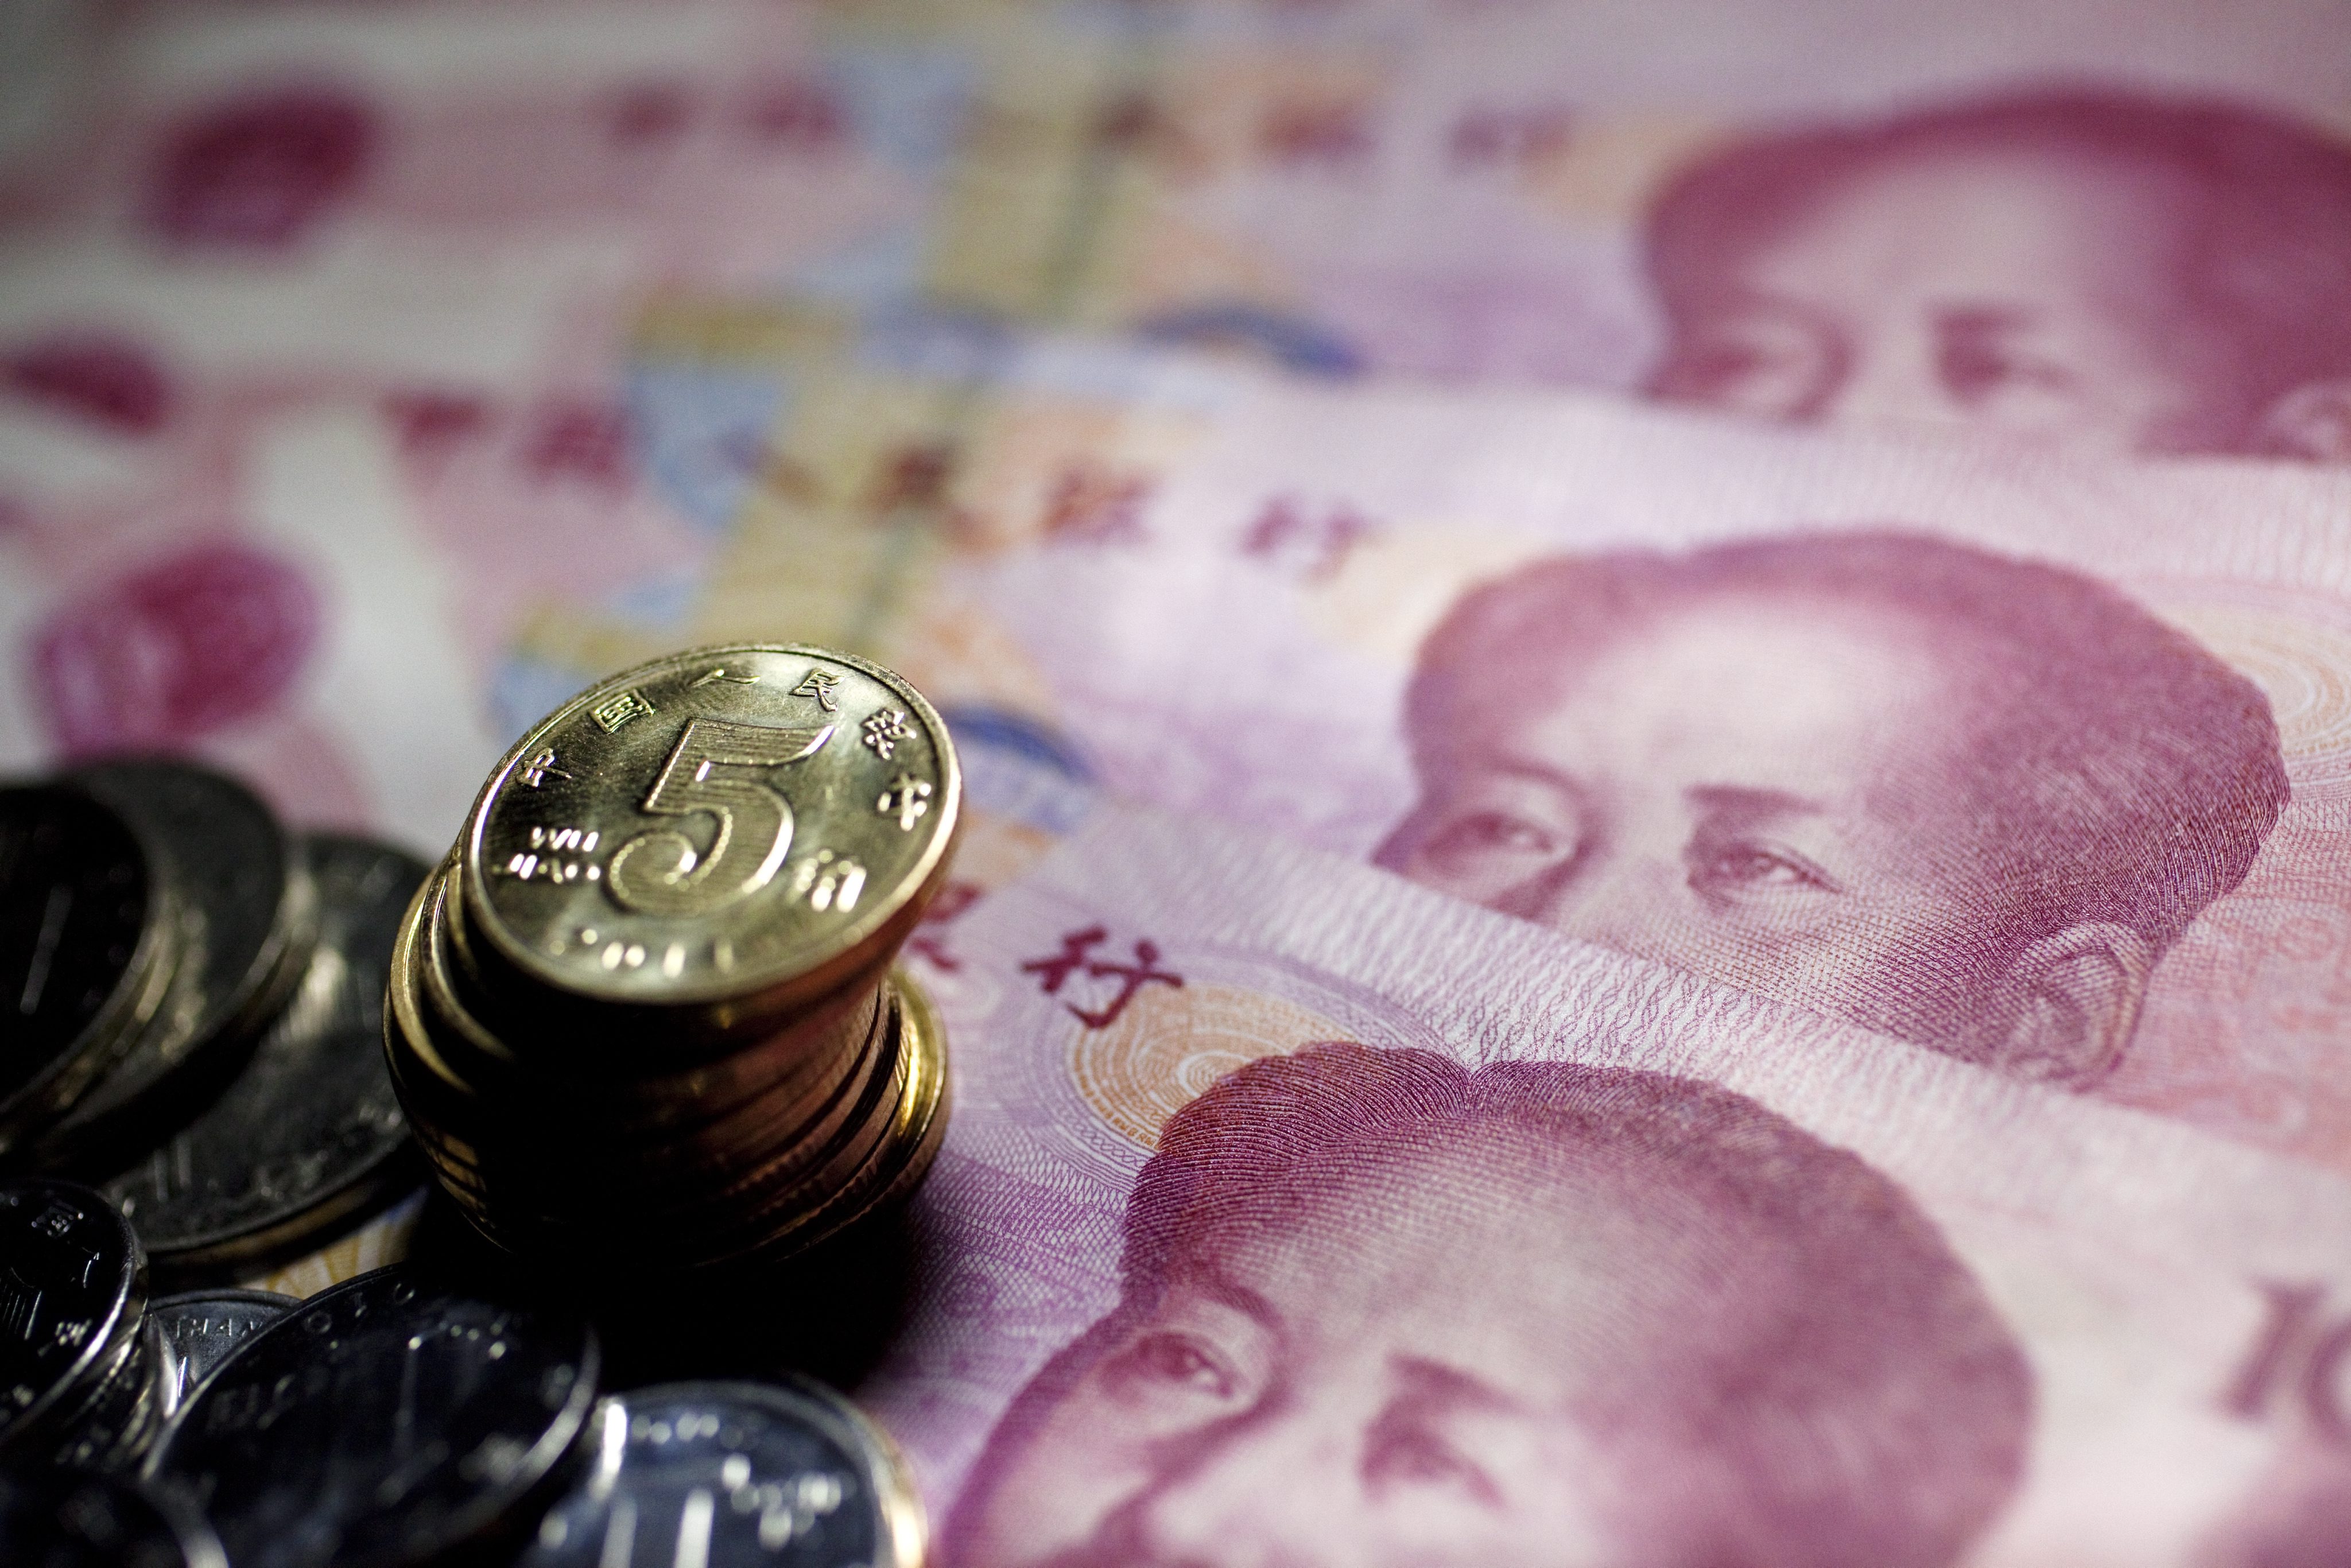 China renminbi